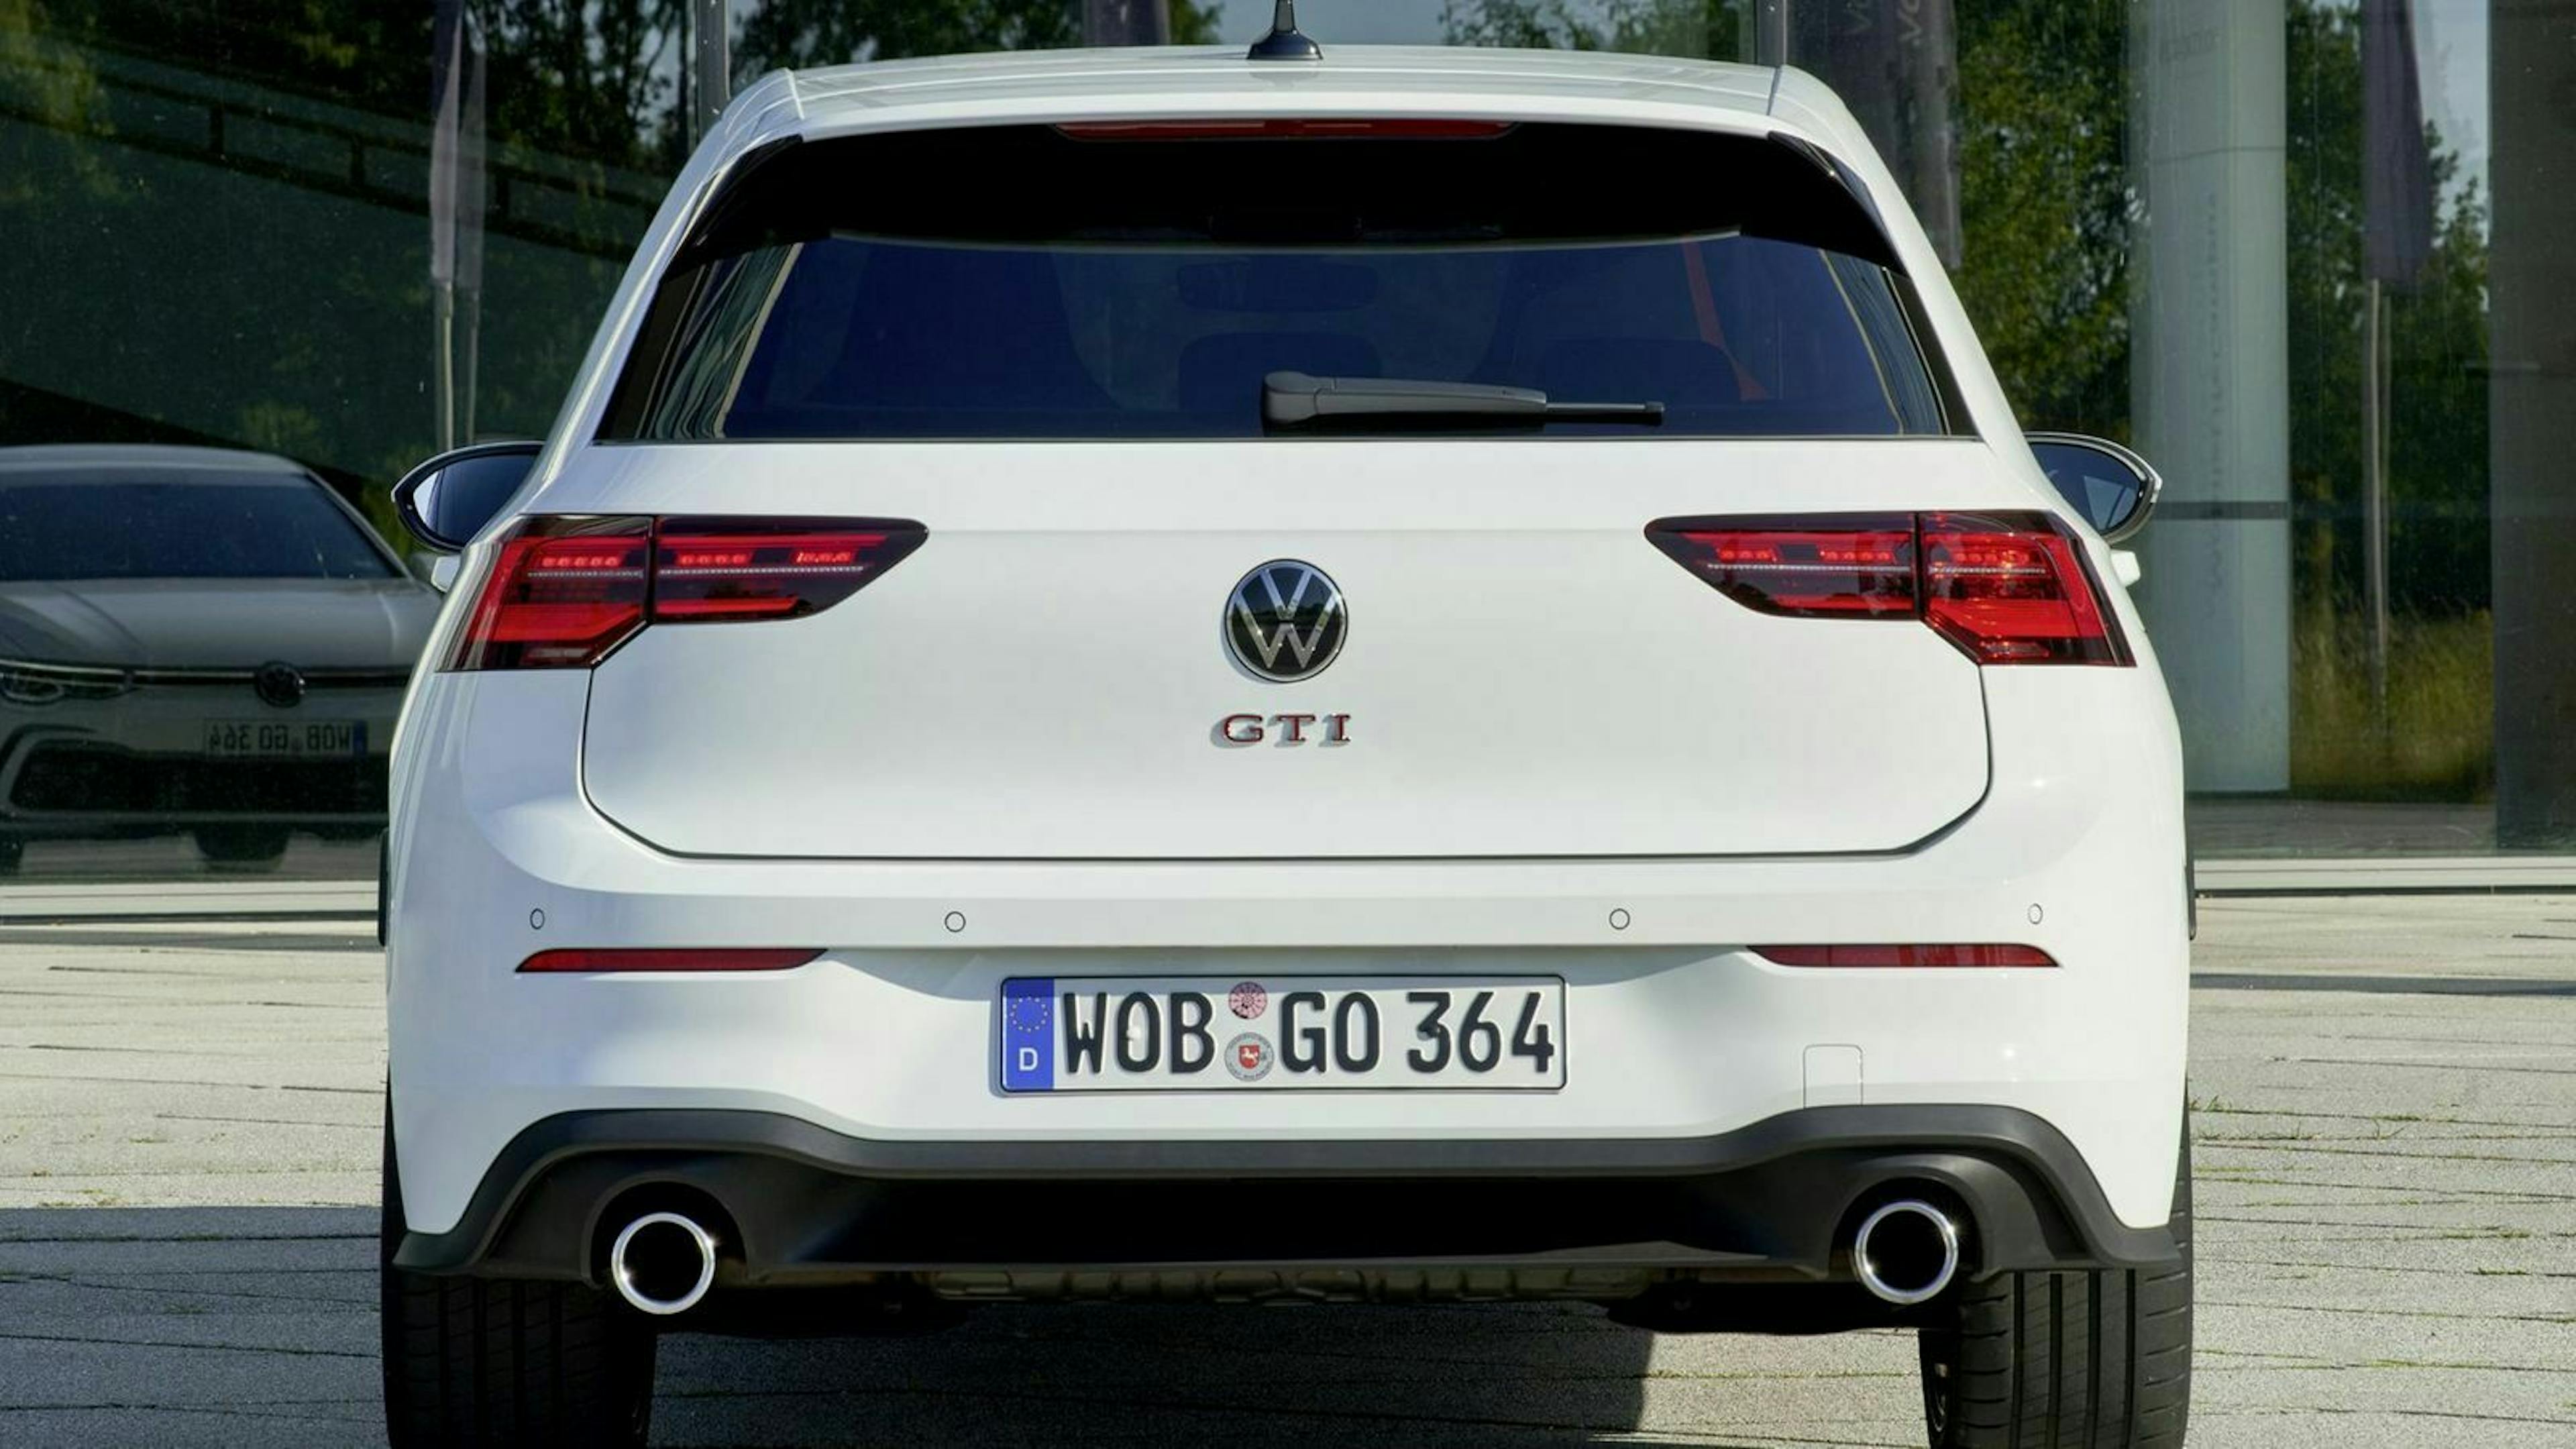 VW Golf 8 GTI in Heckansicht